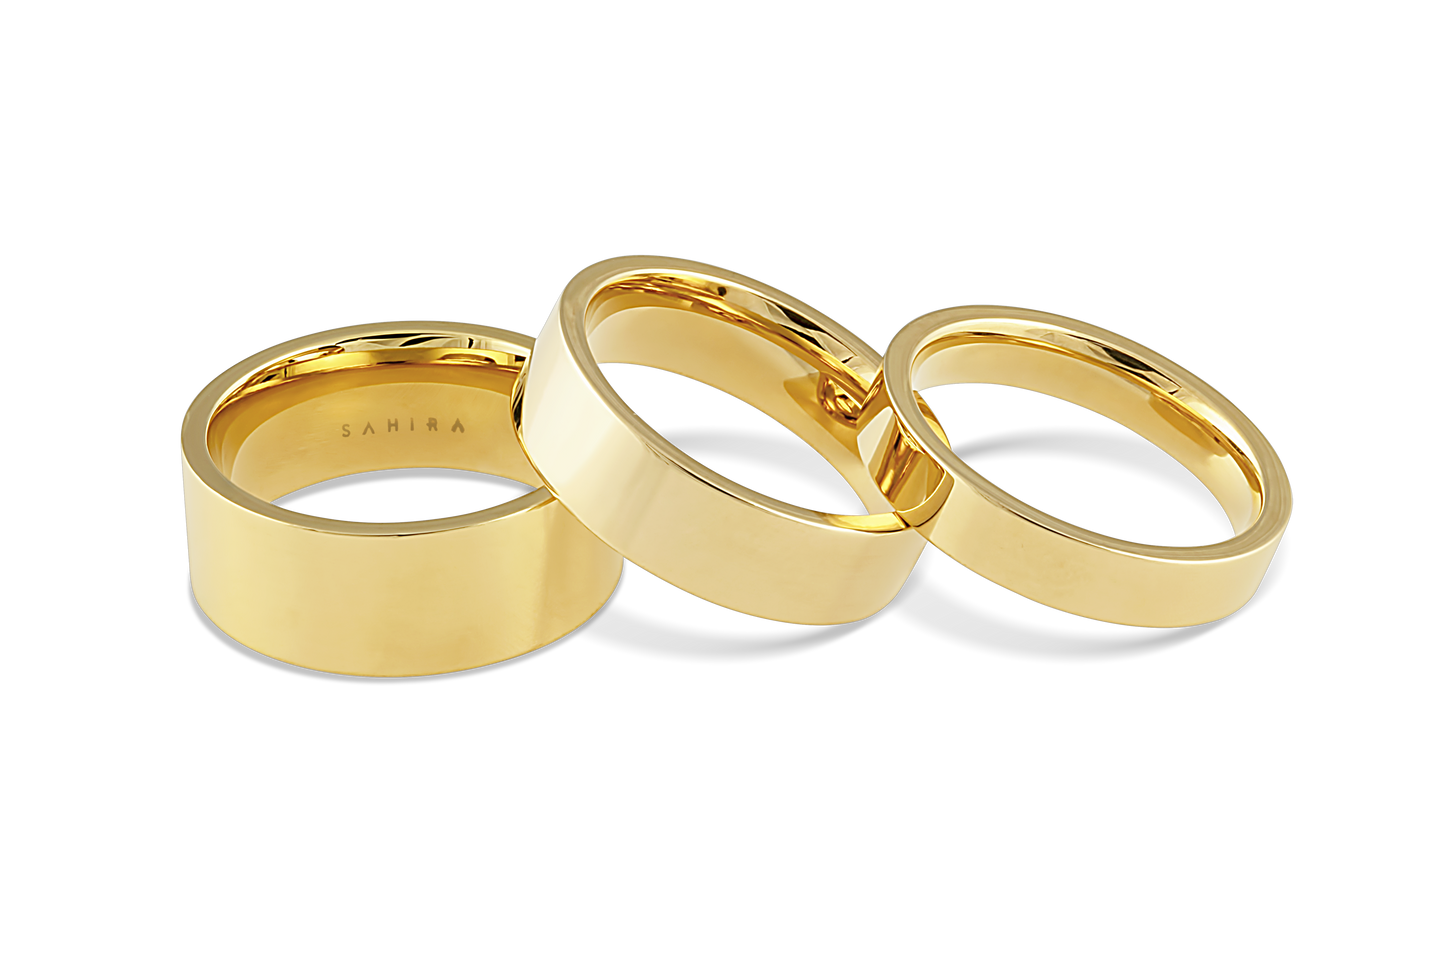 Sahira Jewelry Design - Flat Stackable Ring Set